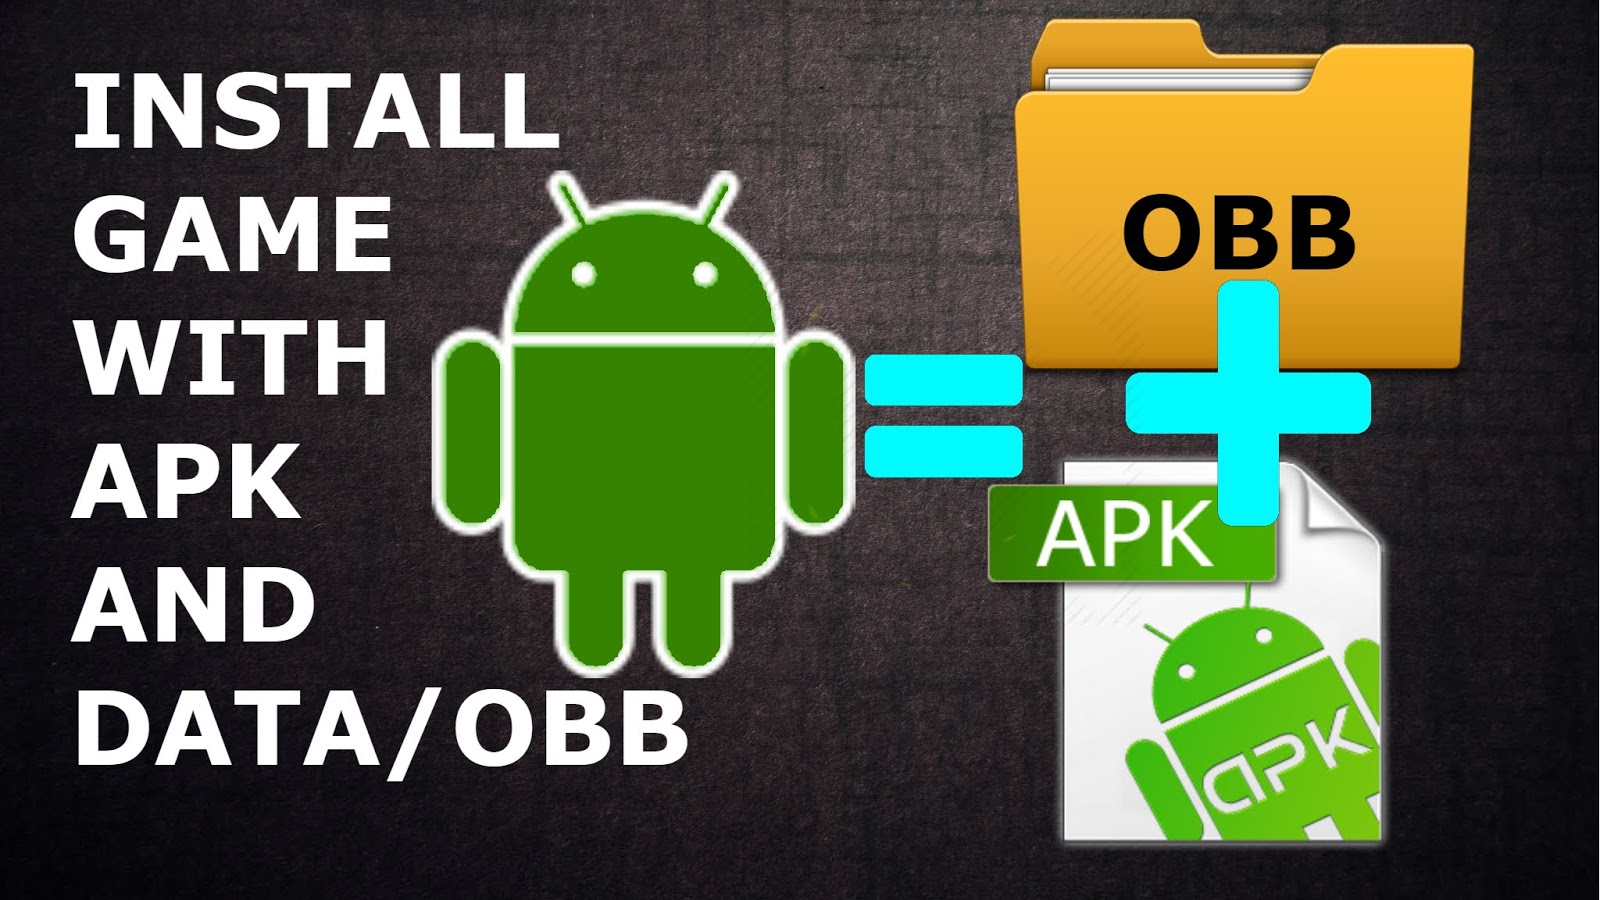 Install игра. Sdcard/Android/OBB. OBB андроид 12. Установка APK. Доступ к android data и obb